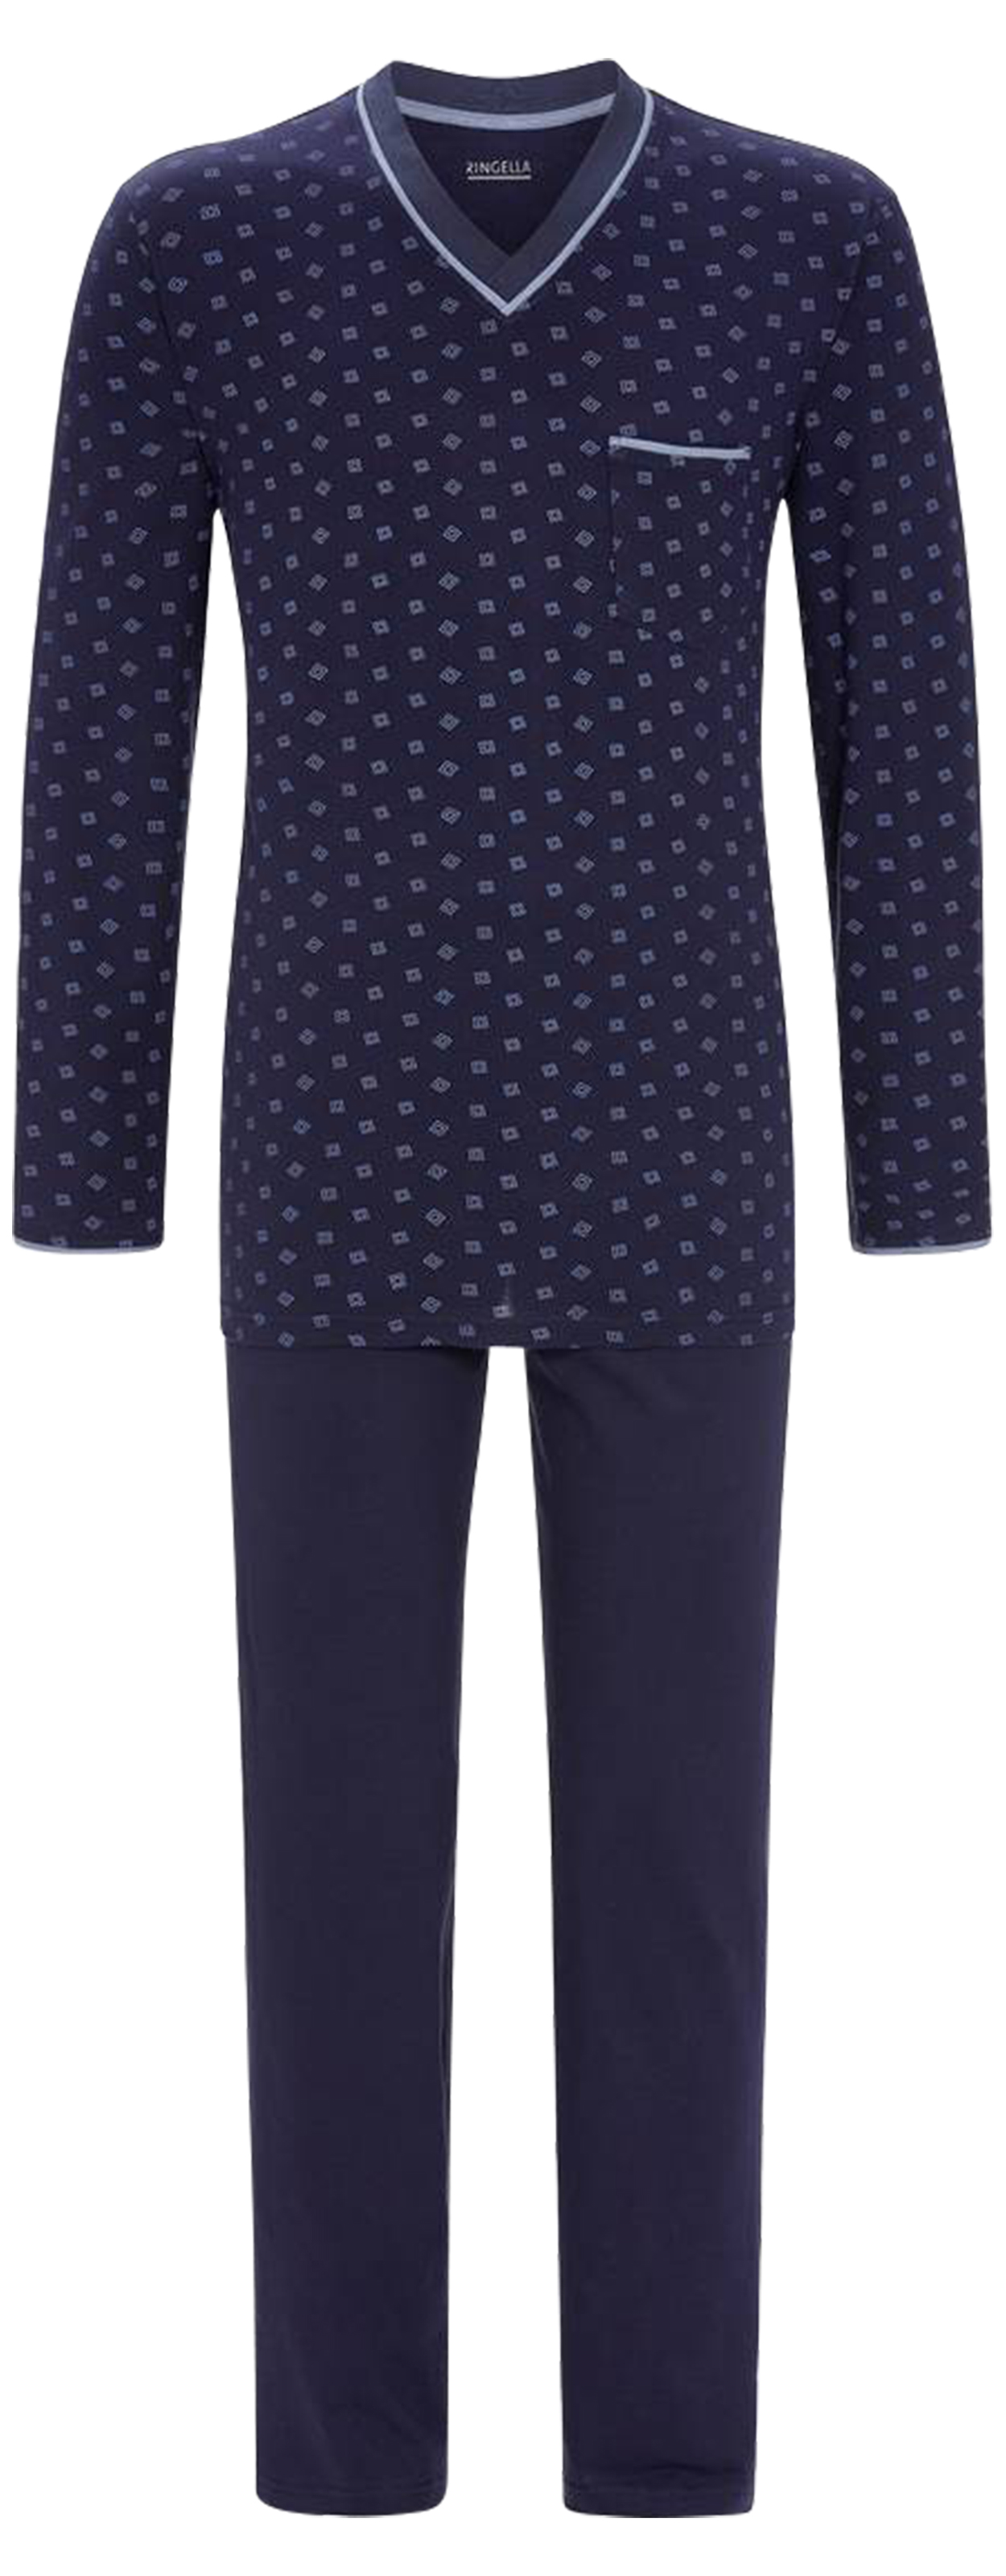 Pyjama long Ringella en coton : tee-shirt manches longues et col v bleu marine à motif géométrique